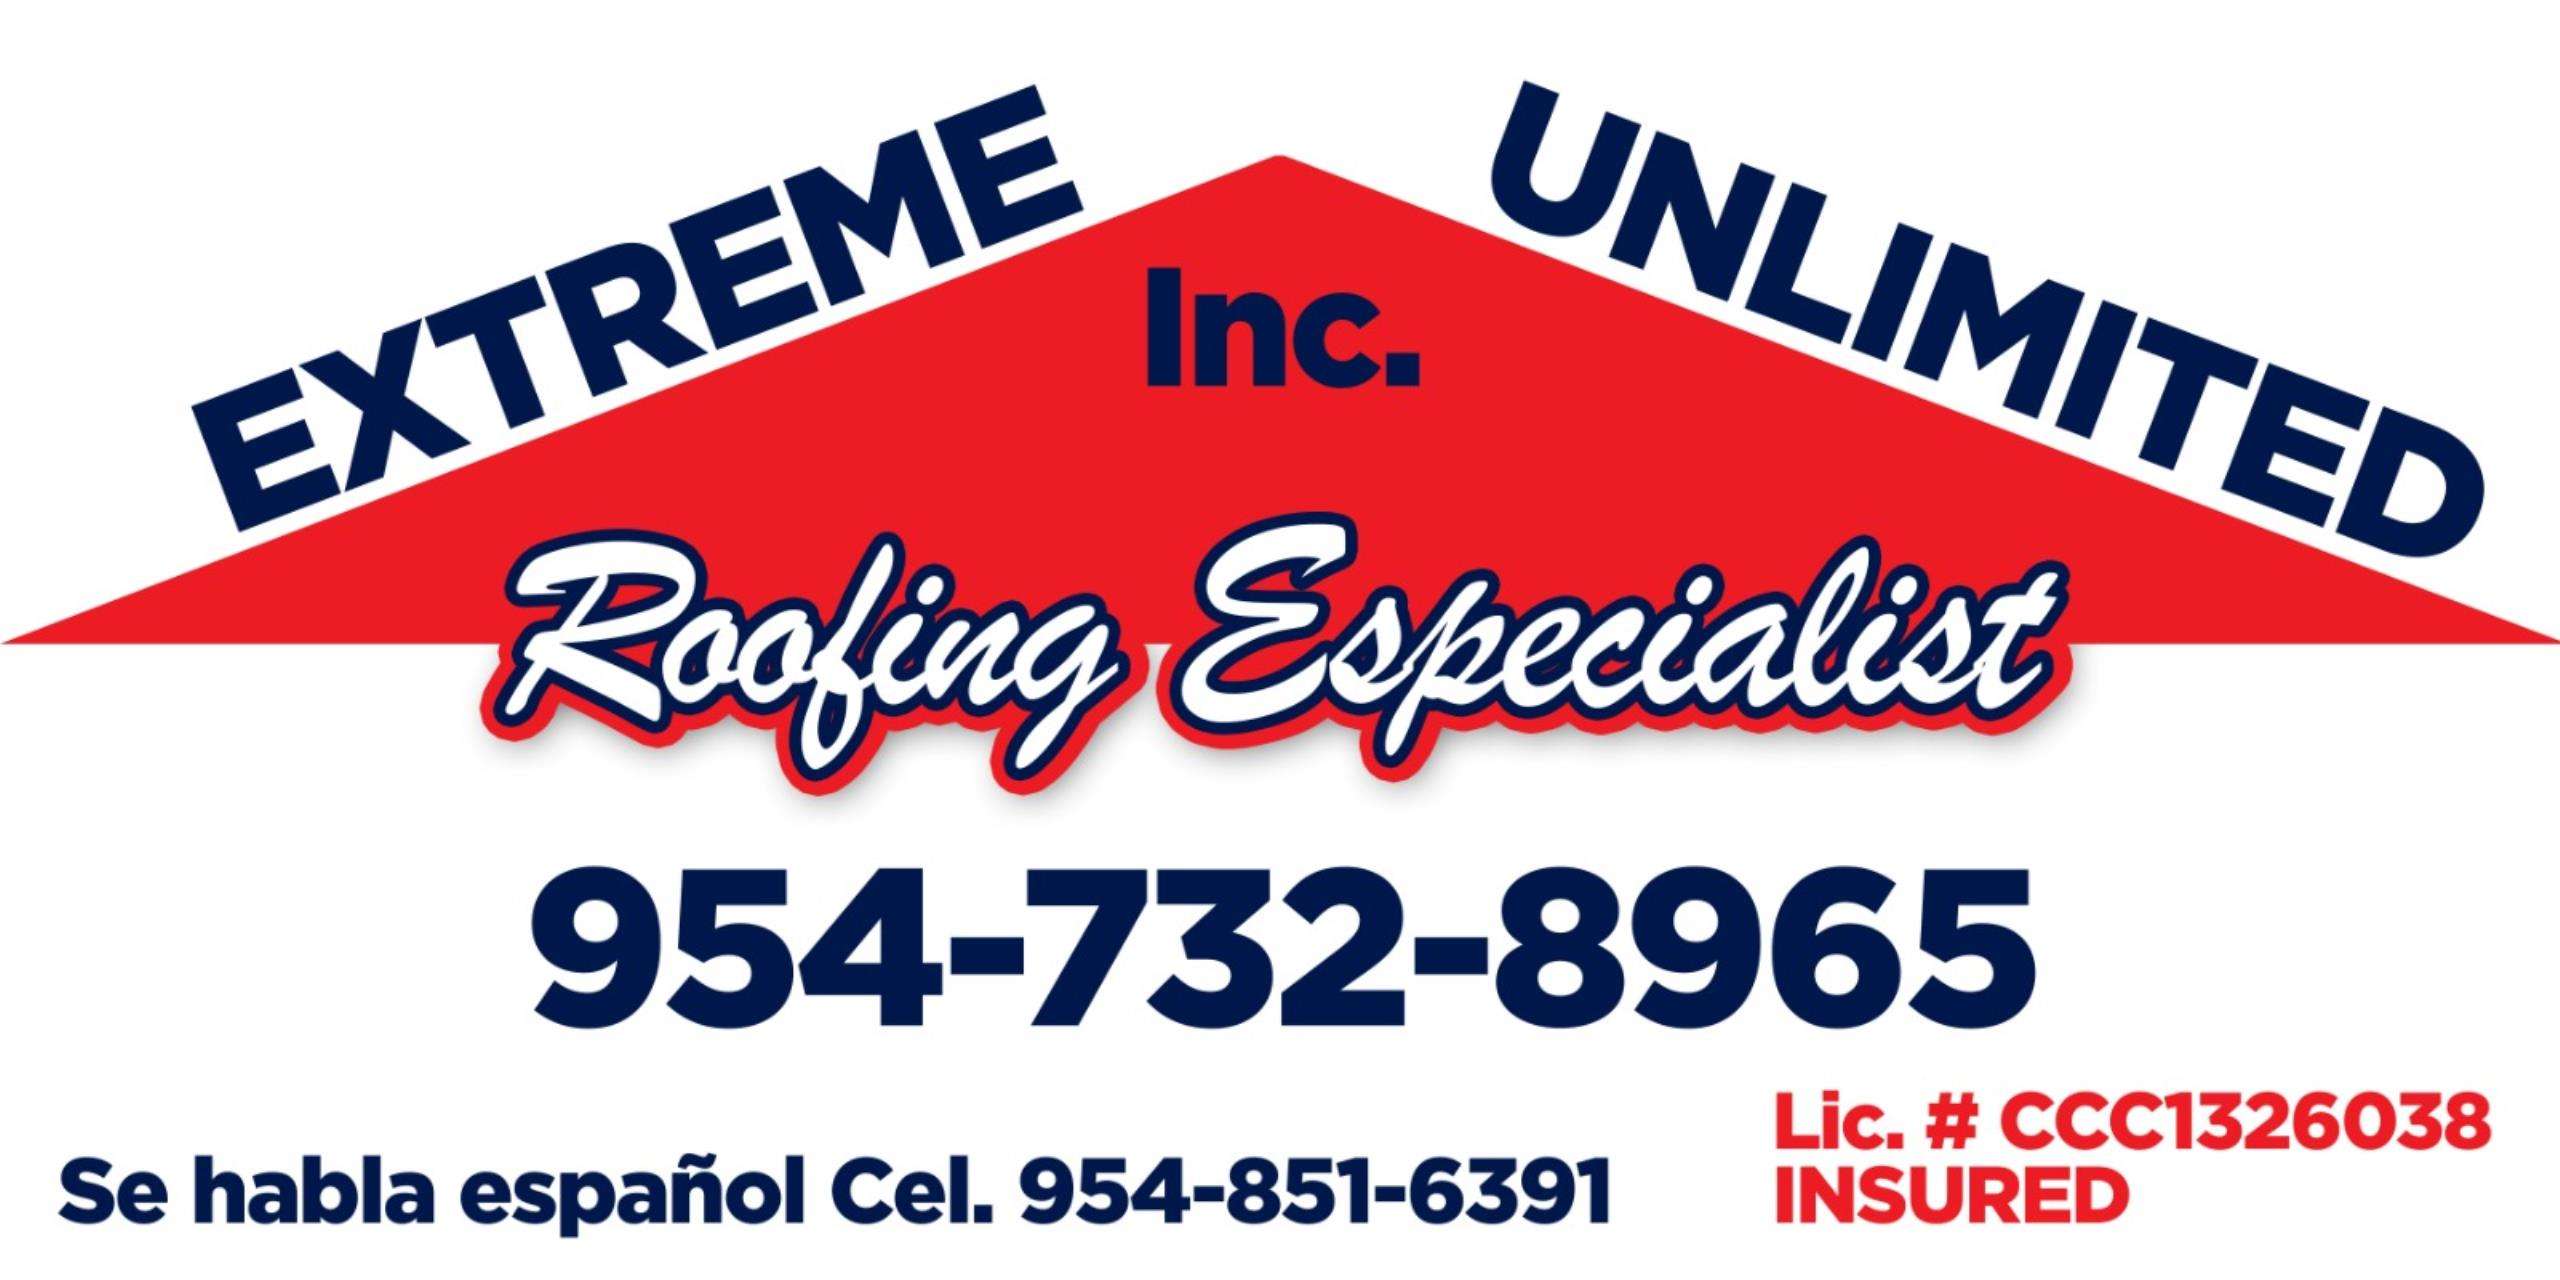 Extreme Unlimited, Inc. Logo